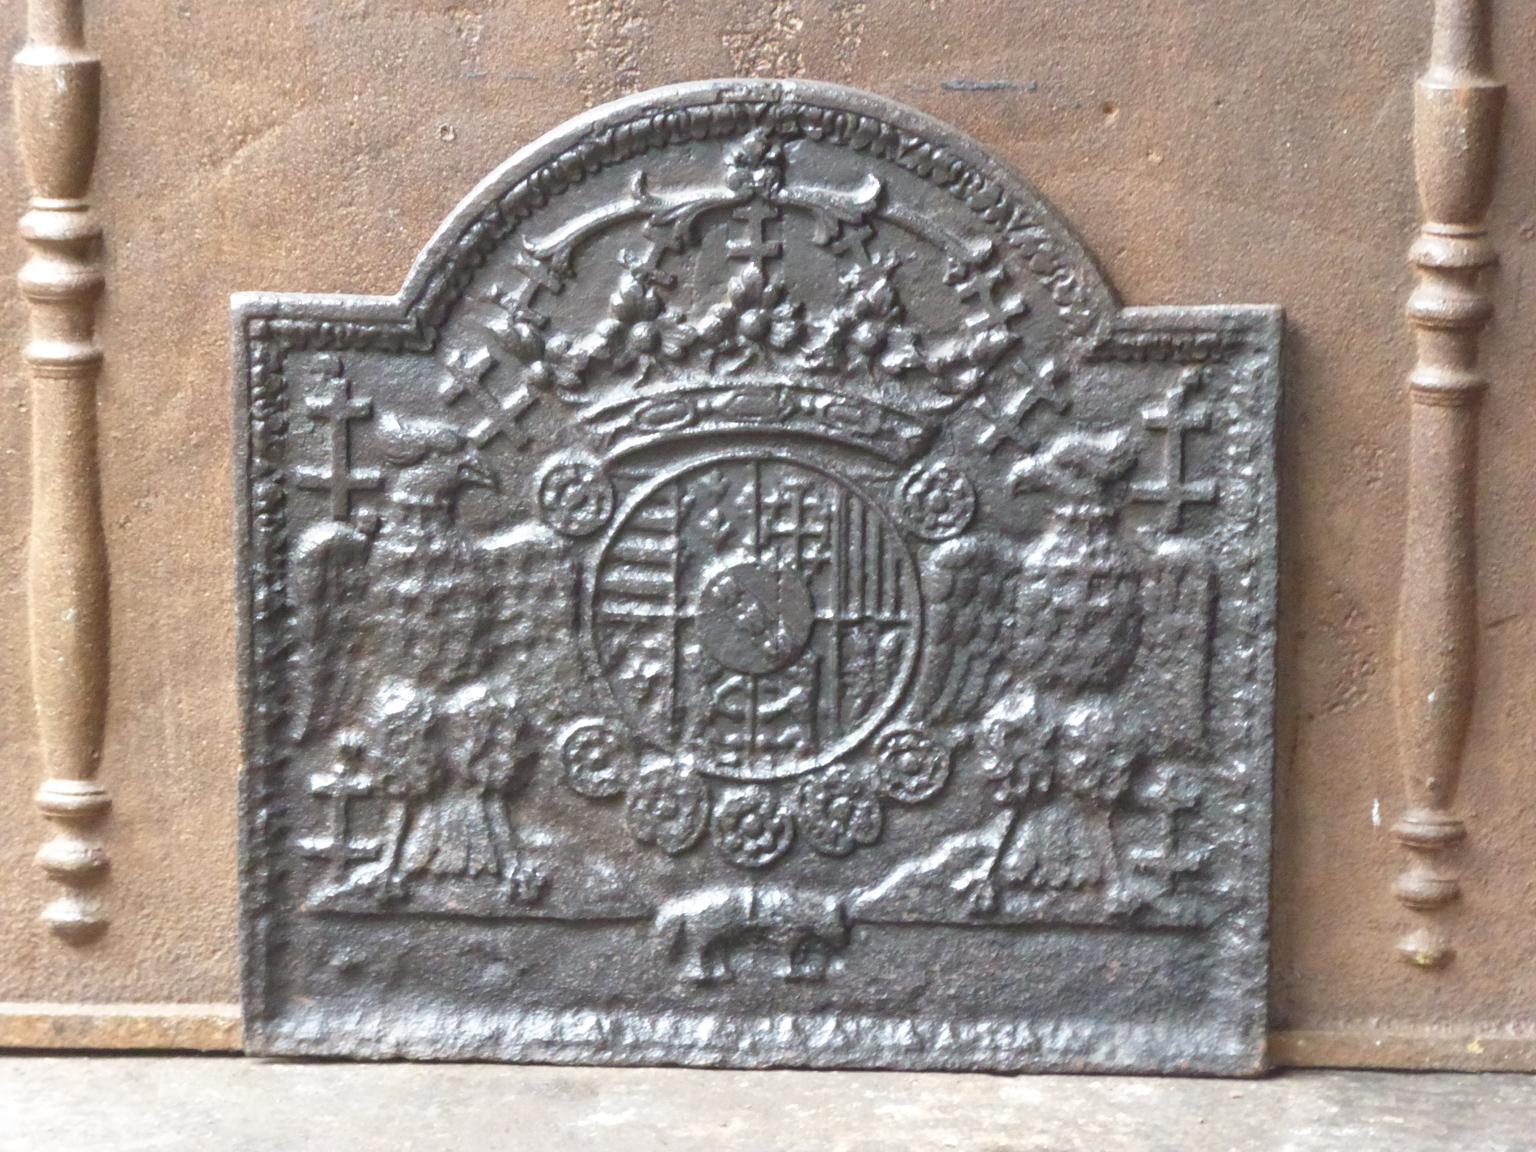 Plaque de cheminée Renaissance française des XVIIe et XVIIIe siècles aux armes de Léopold Ier, duc de Lorrain. Les bras sont entourés d'une chaîne représentant la Toison d'or. Le symbole de cet ordre est une petite toison d'or représentant la tête